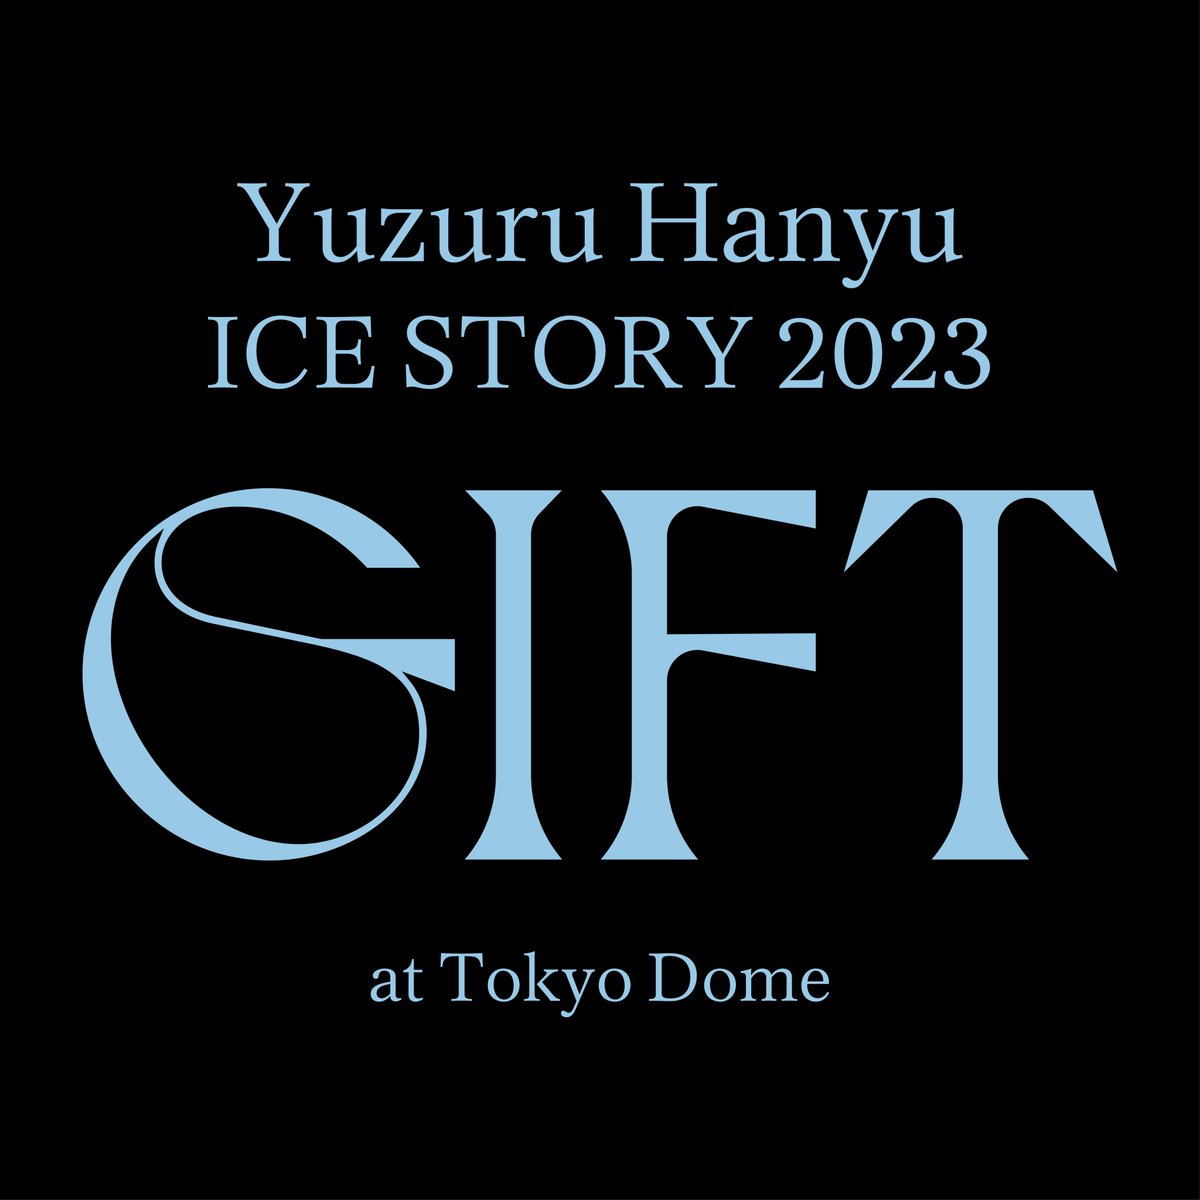 【#羽生結弦】
／
8/20(火)発売  DVD/Blu-ray
「Yuzuru Hanyu ICE STORY 2023 “GIFT” at Tokyo Dome」
絶賛ご予約受付中❄✨
＼ 

🔽ご予約・ご購入はこちら
shop-crtk.com/search?tagGrou…